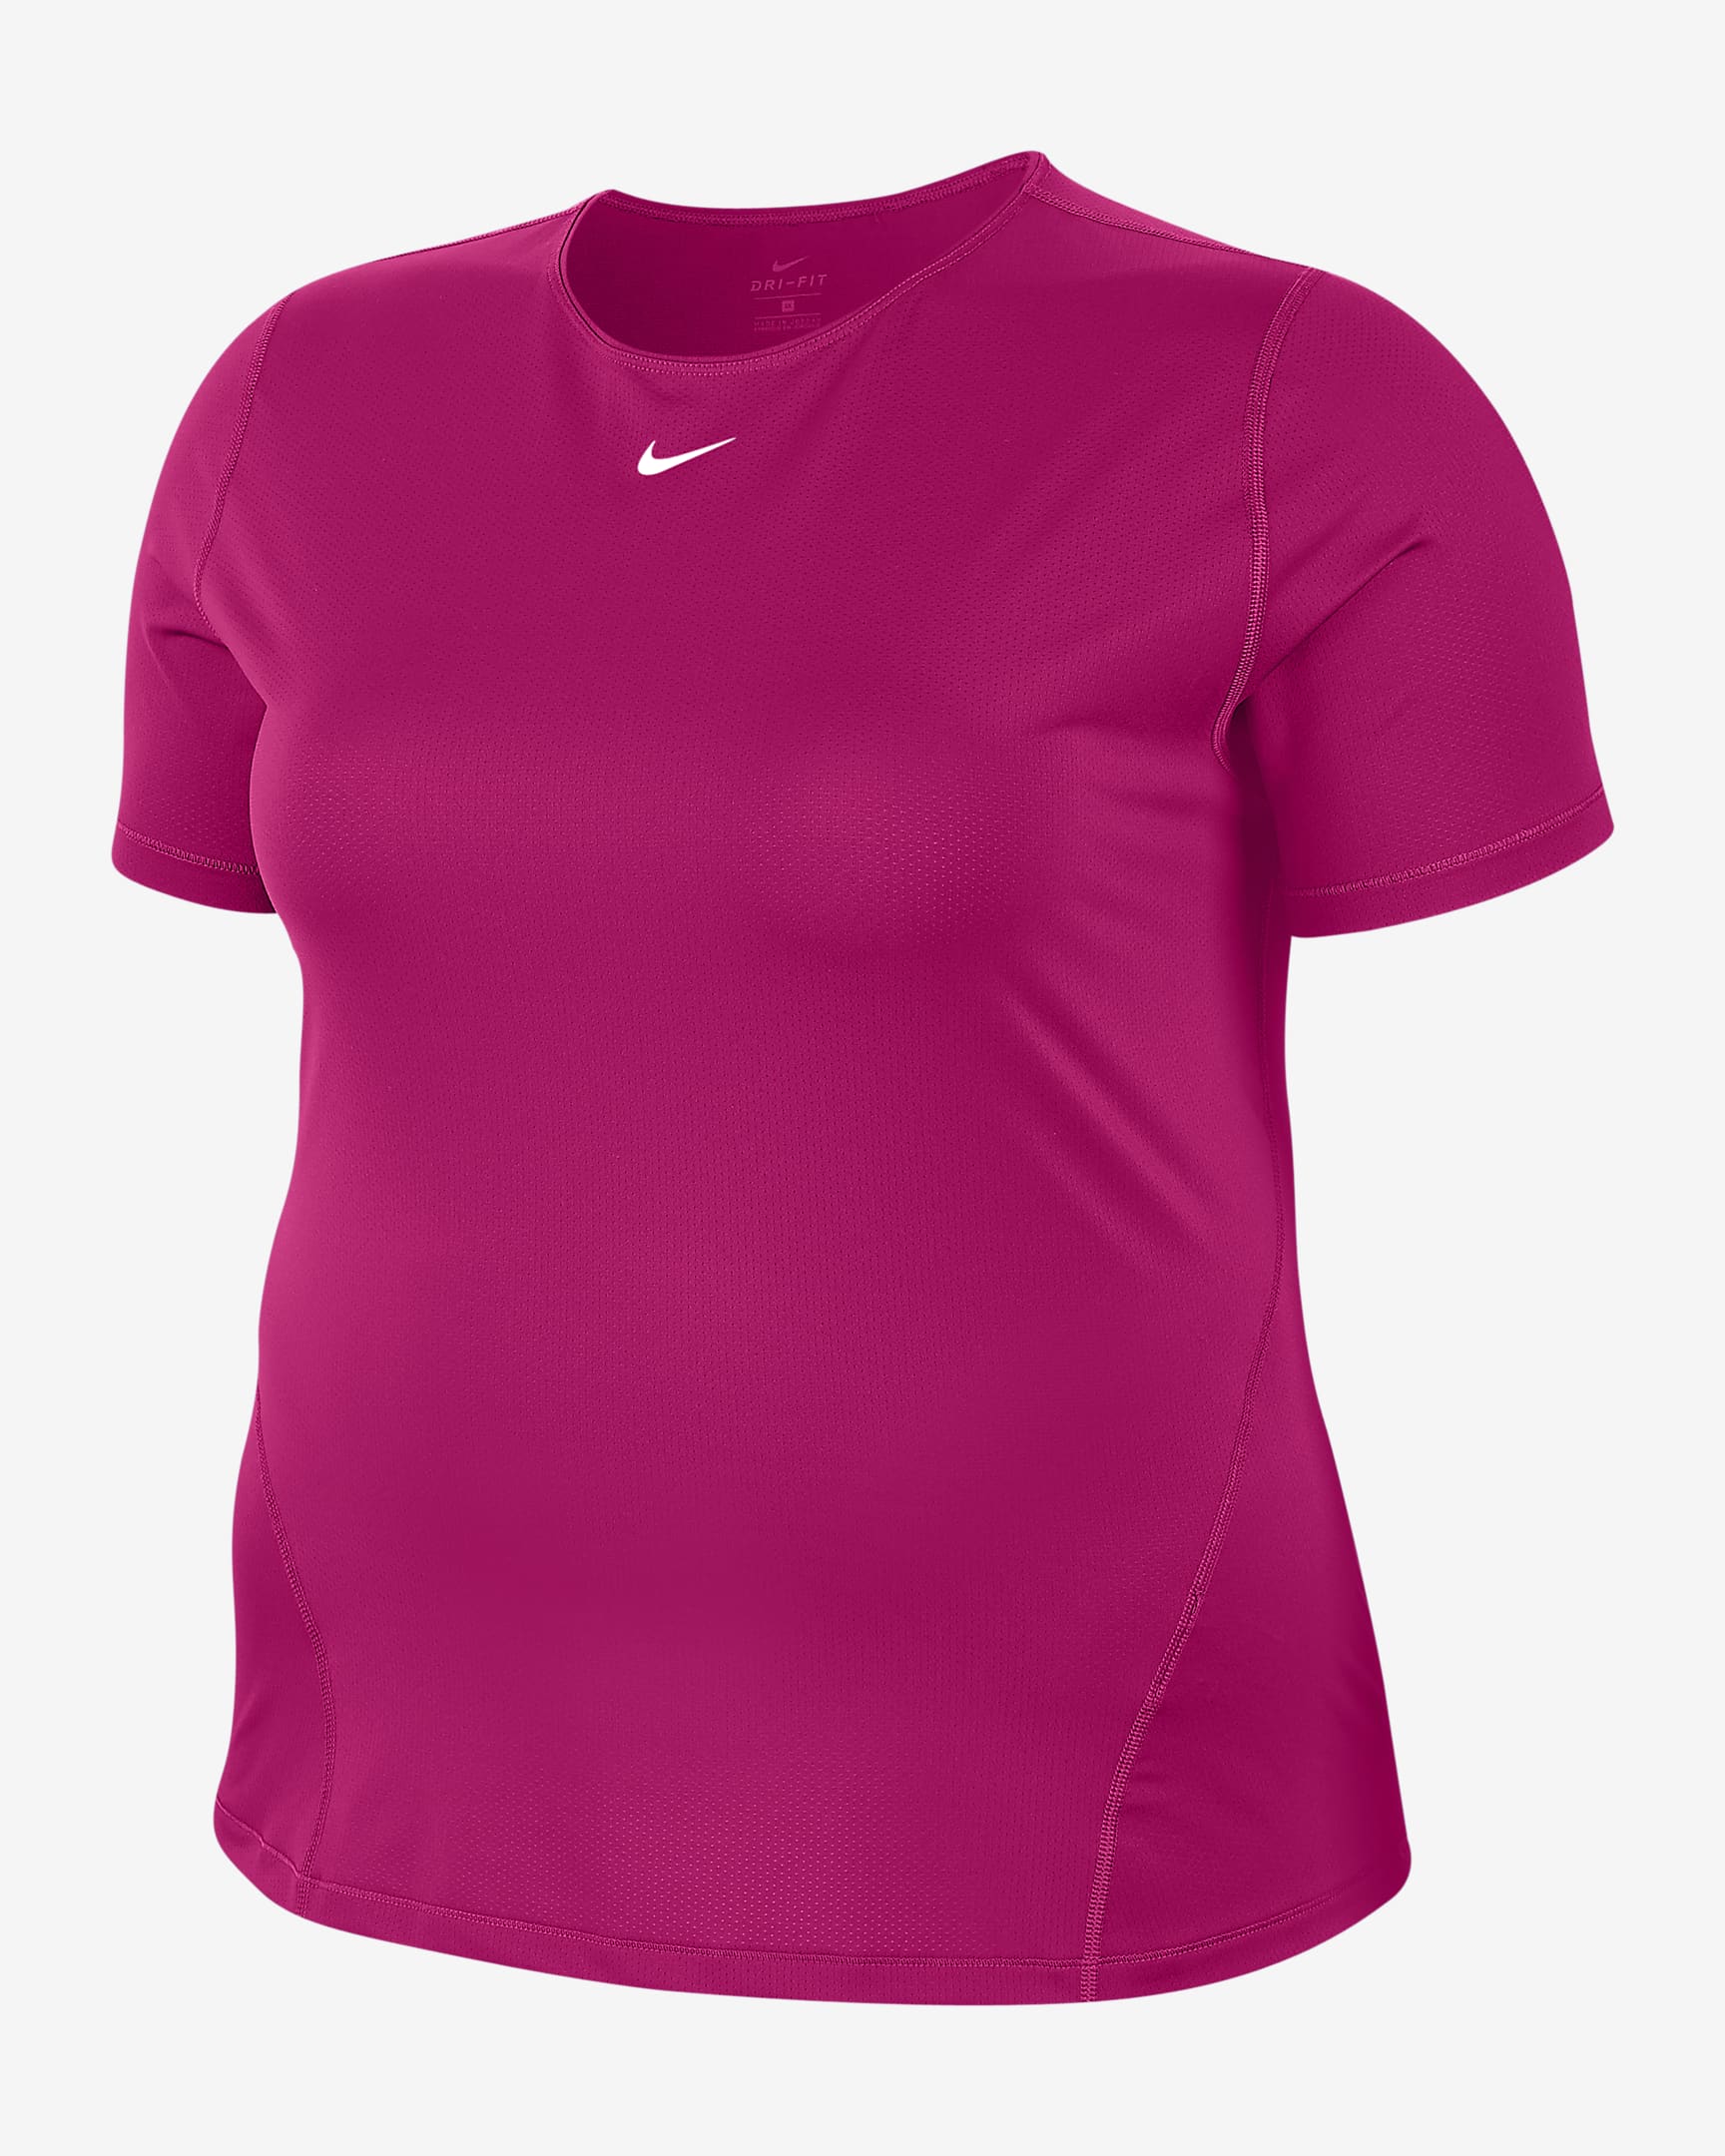 Nike牛年红色运动服饰低至7折!$55收红色卫衣